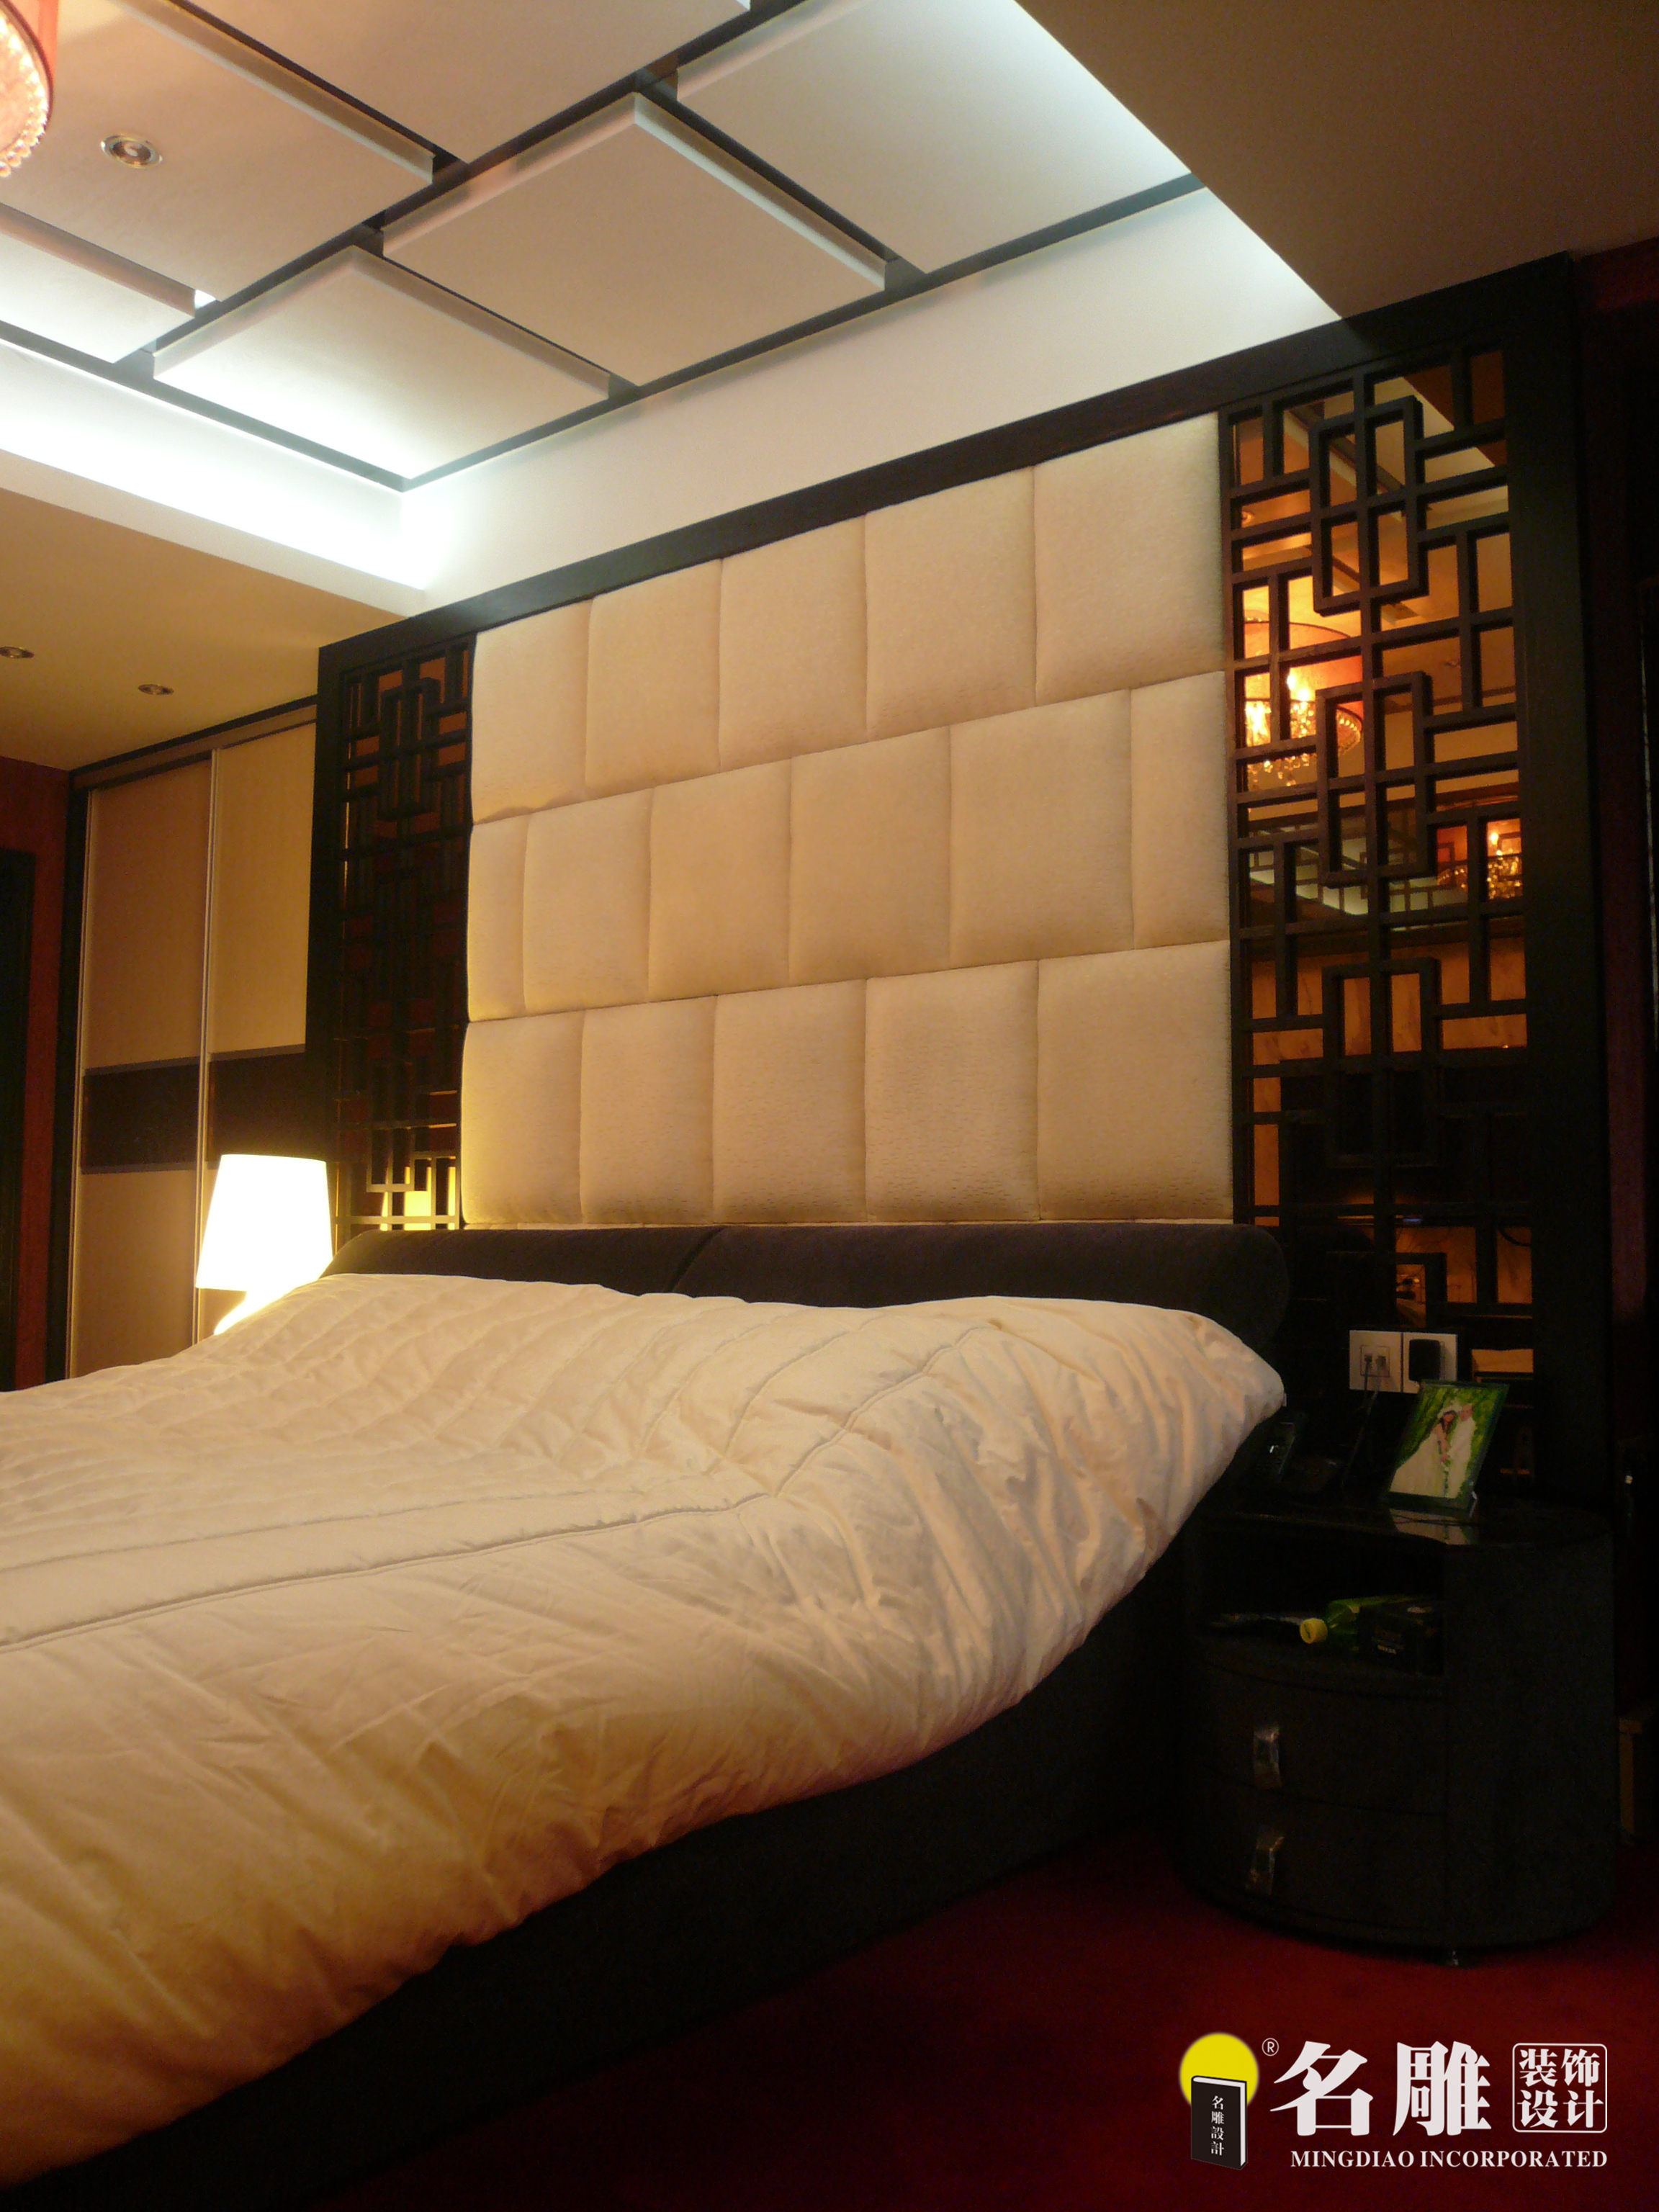 新中式 现代中式 三居 白领 文艺范 东方雅居 卧室图片来自名雕装饰设计在新中式—150平三居室东方雅居的分享